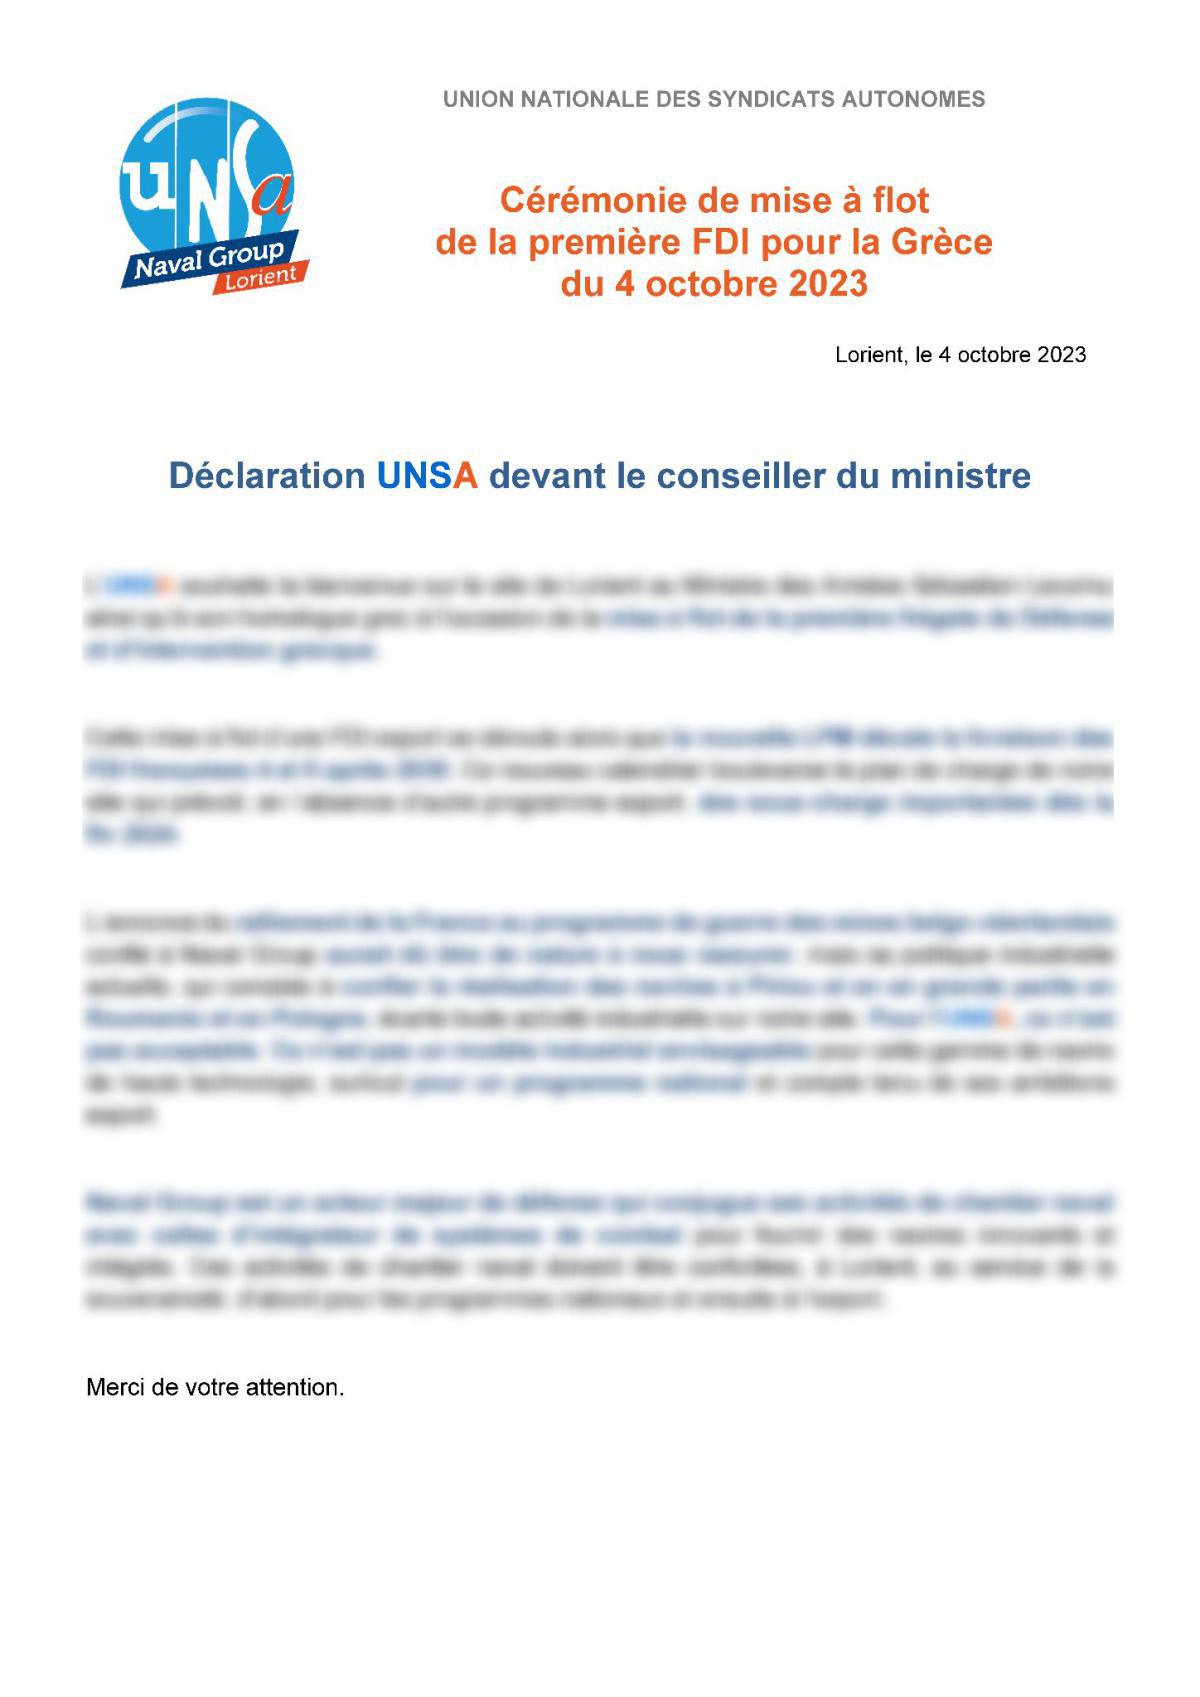 Les déclarations UNSA devant le PDG et le conseiller du Ministre lors de la mise à flot de la FDI Grèce n° 1 : 4 octobre 2023